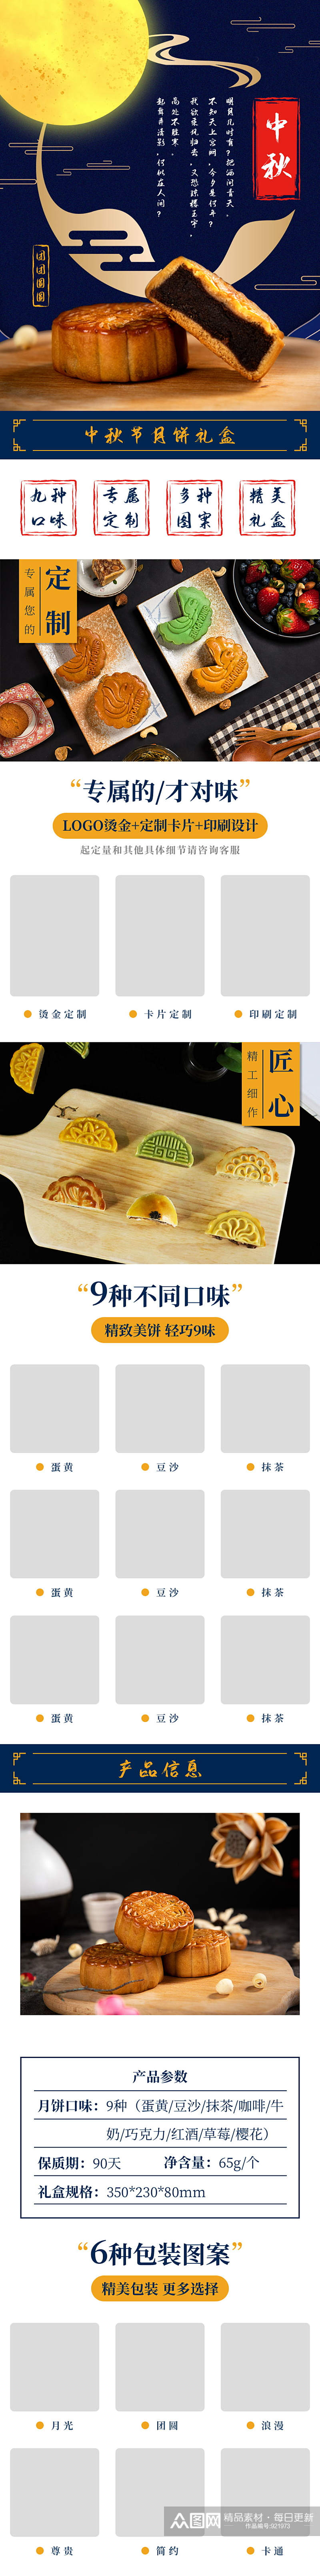 天猫中秋节月饼食品详情页模版素材